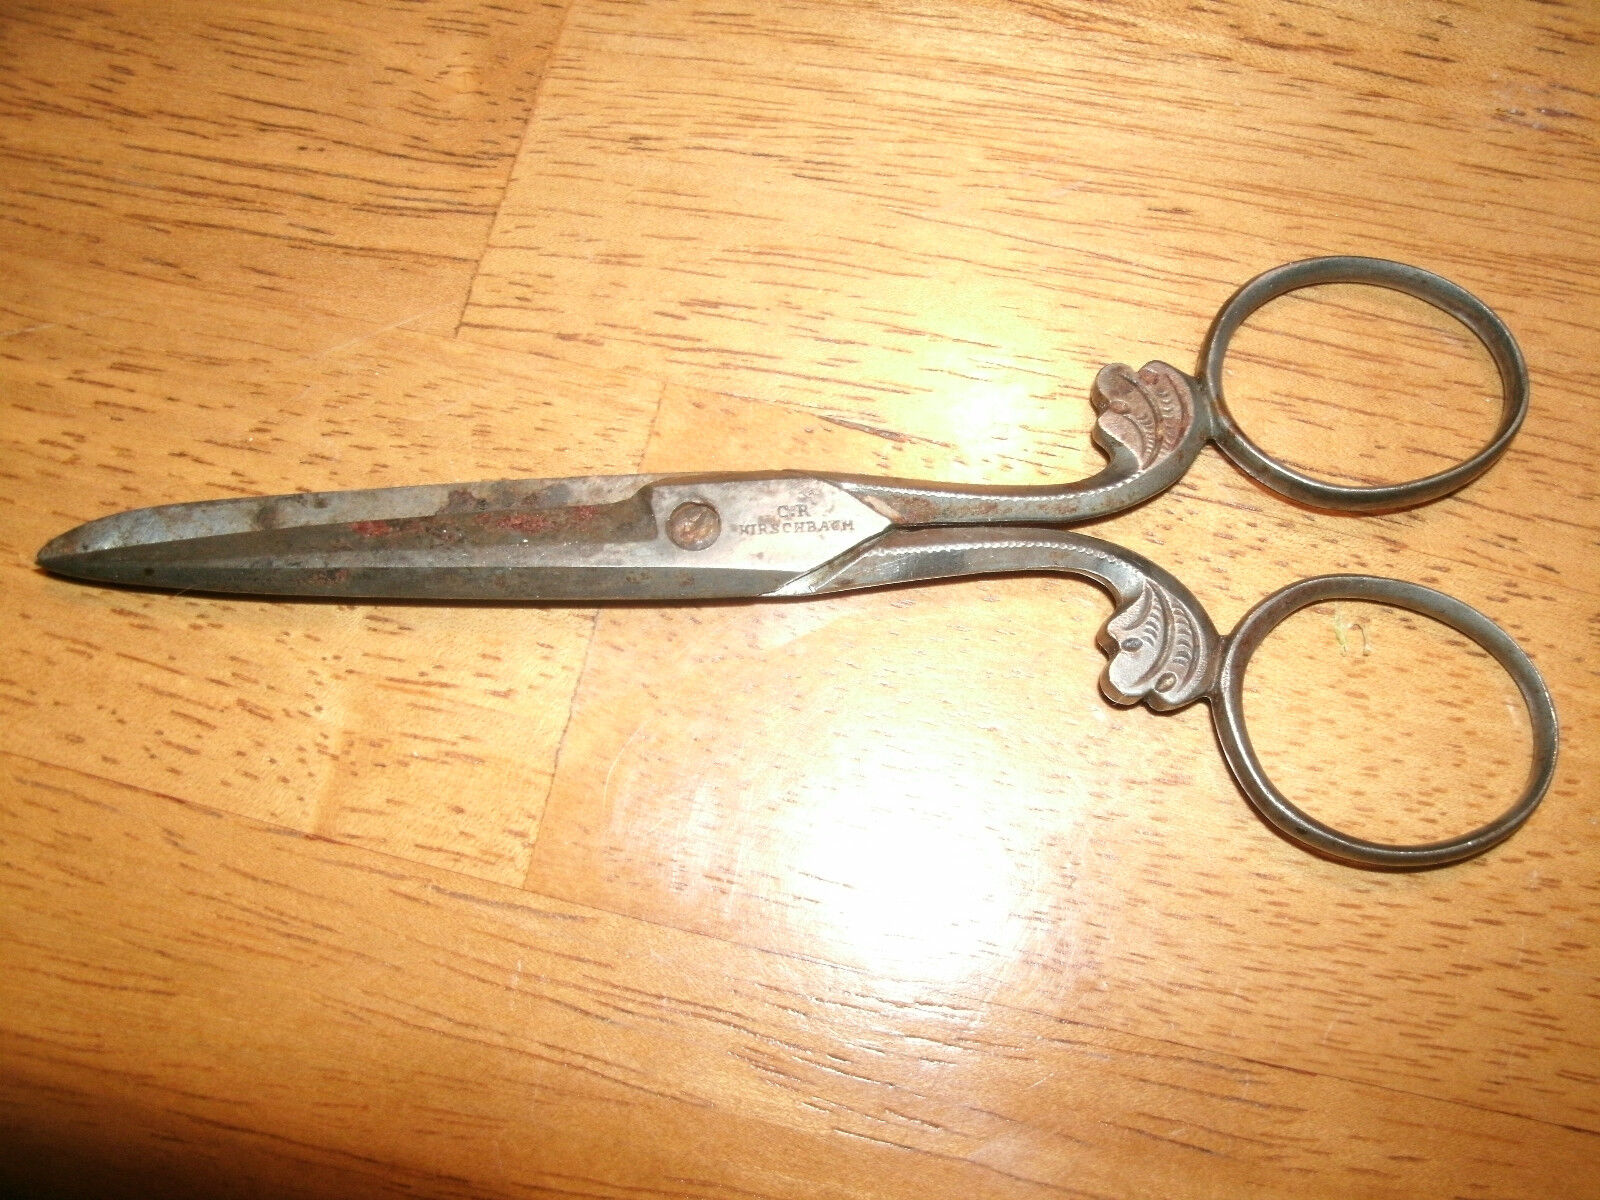 CIVIL WAR ERA / C.R. KIRSCHBAUM Scissors - Ornate Design -  Rare Antique